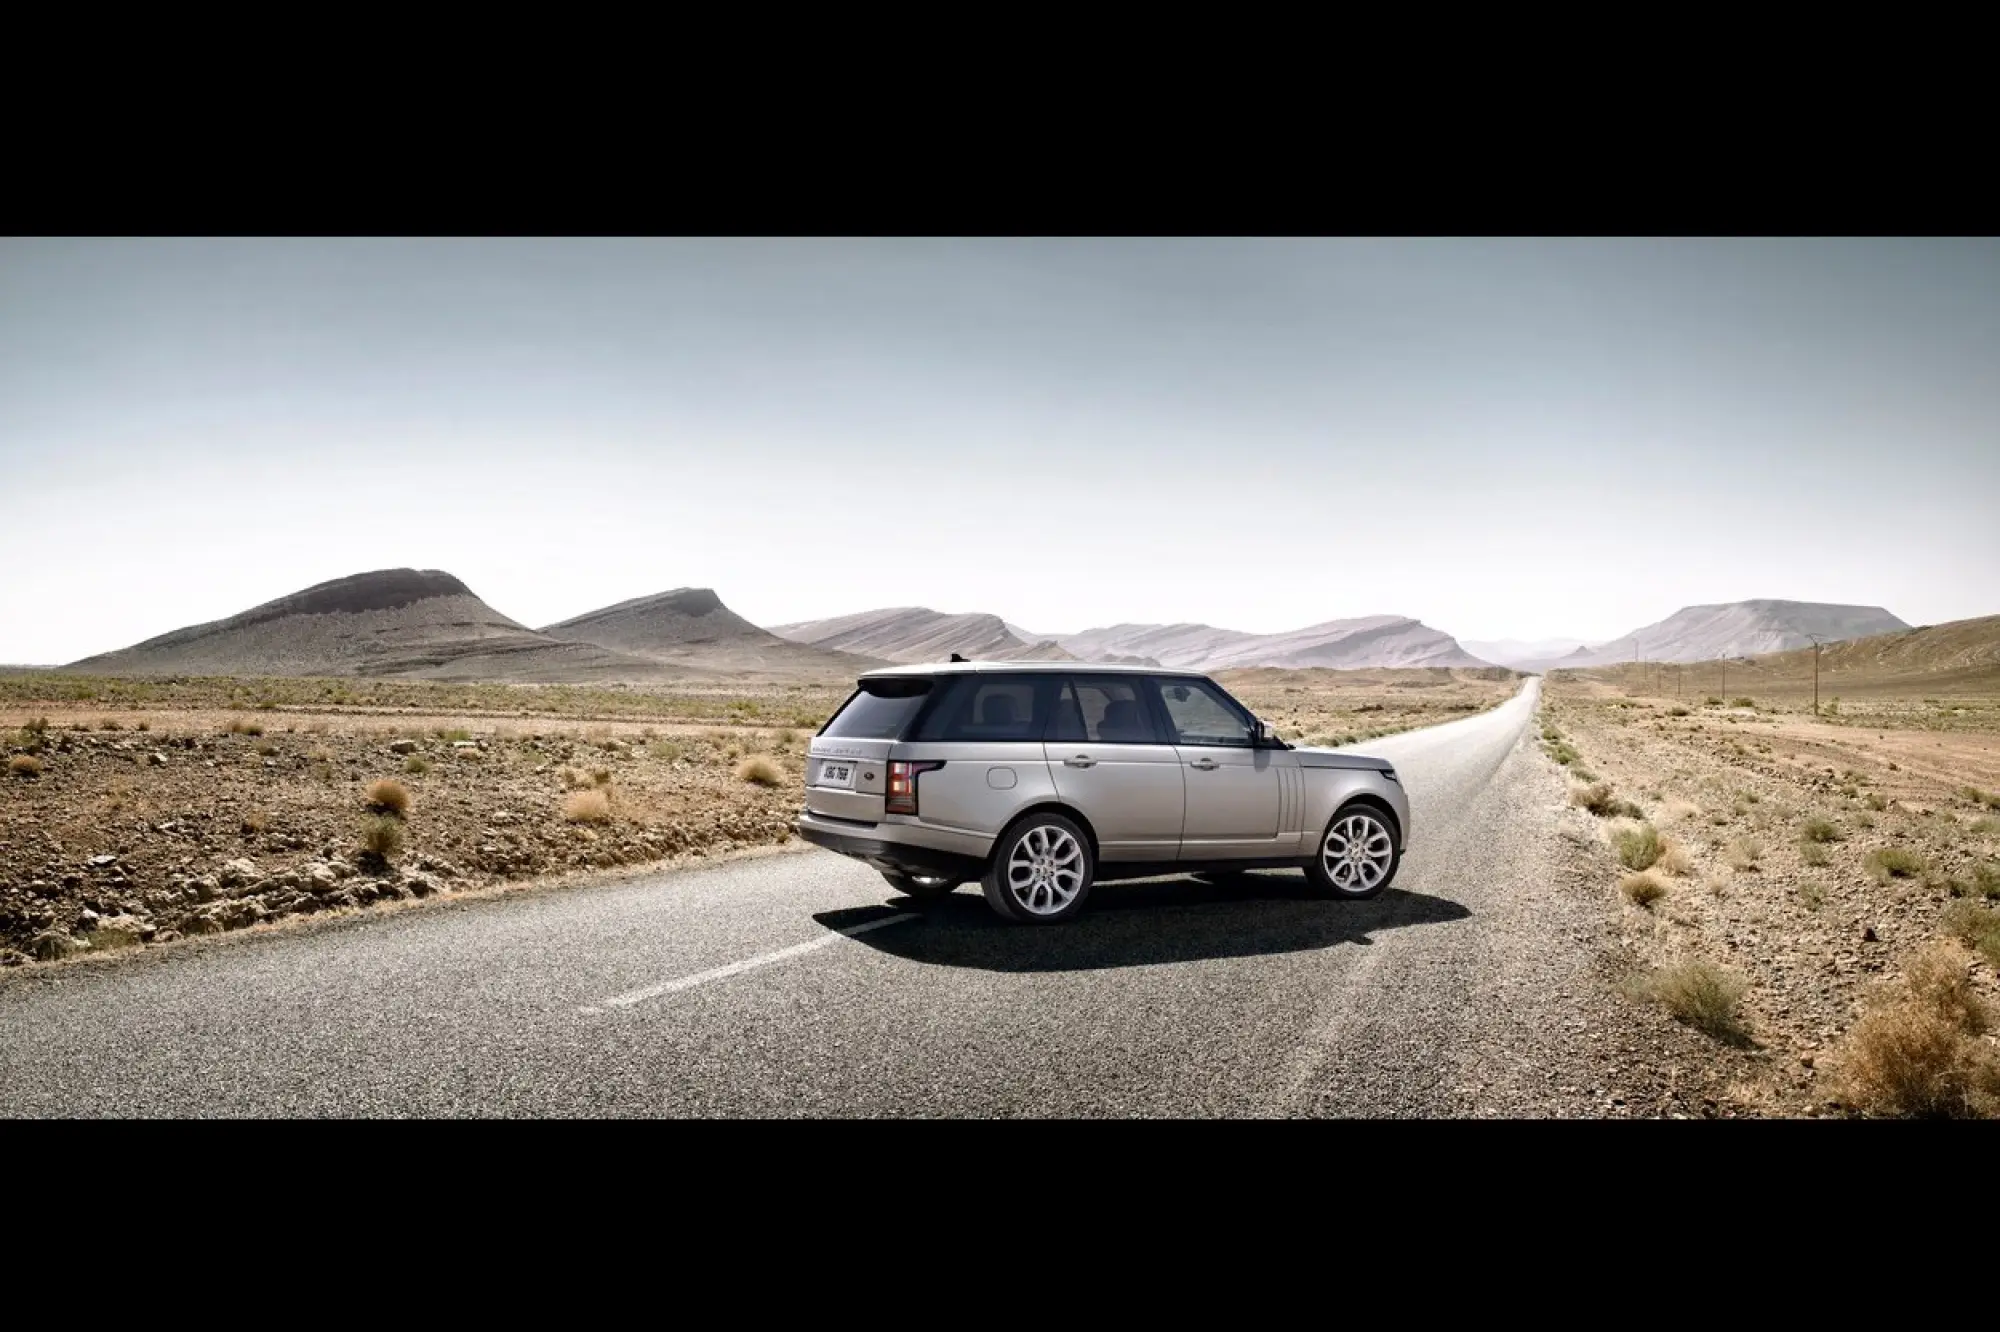 Range Rover Classic 2013 foto ufficiali - 10